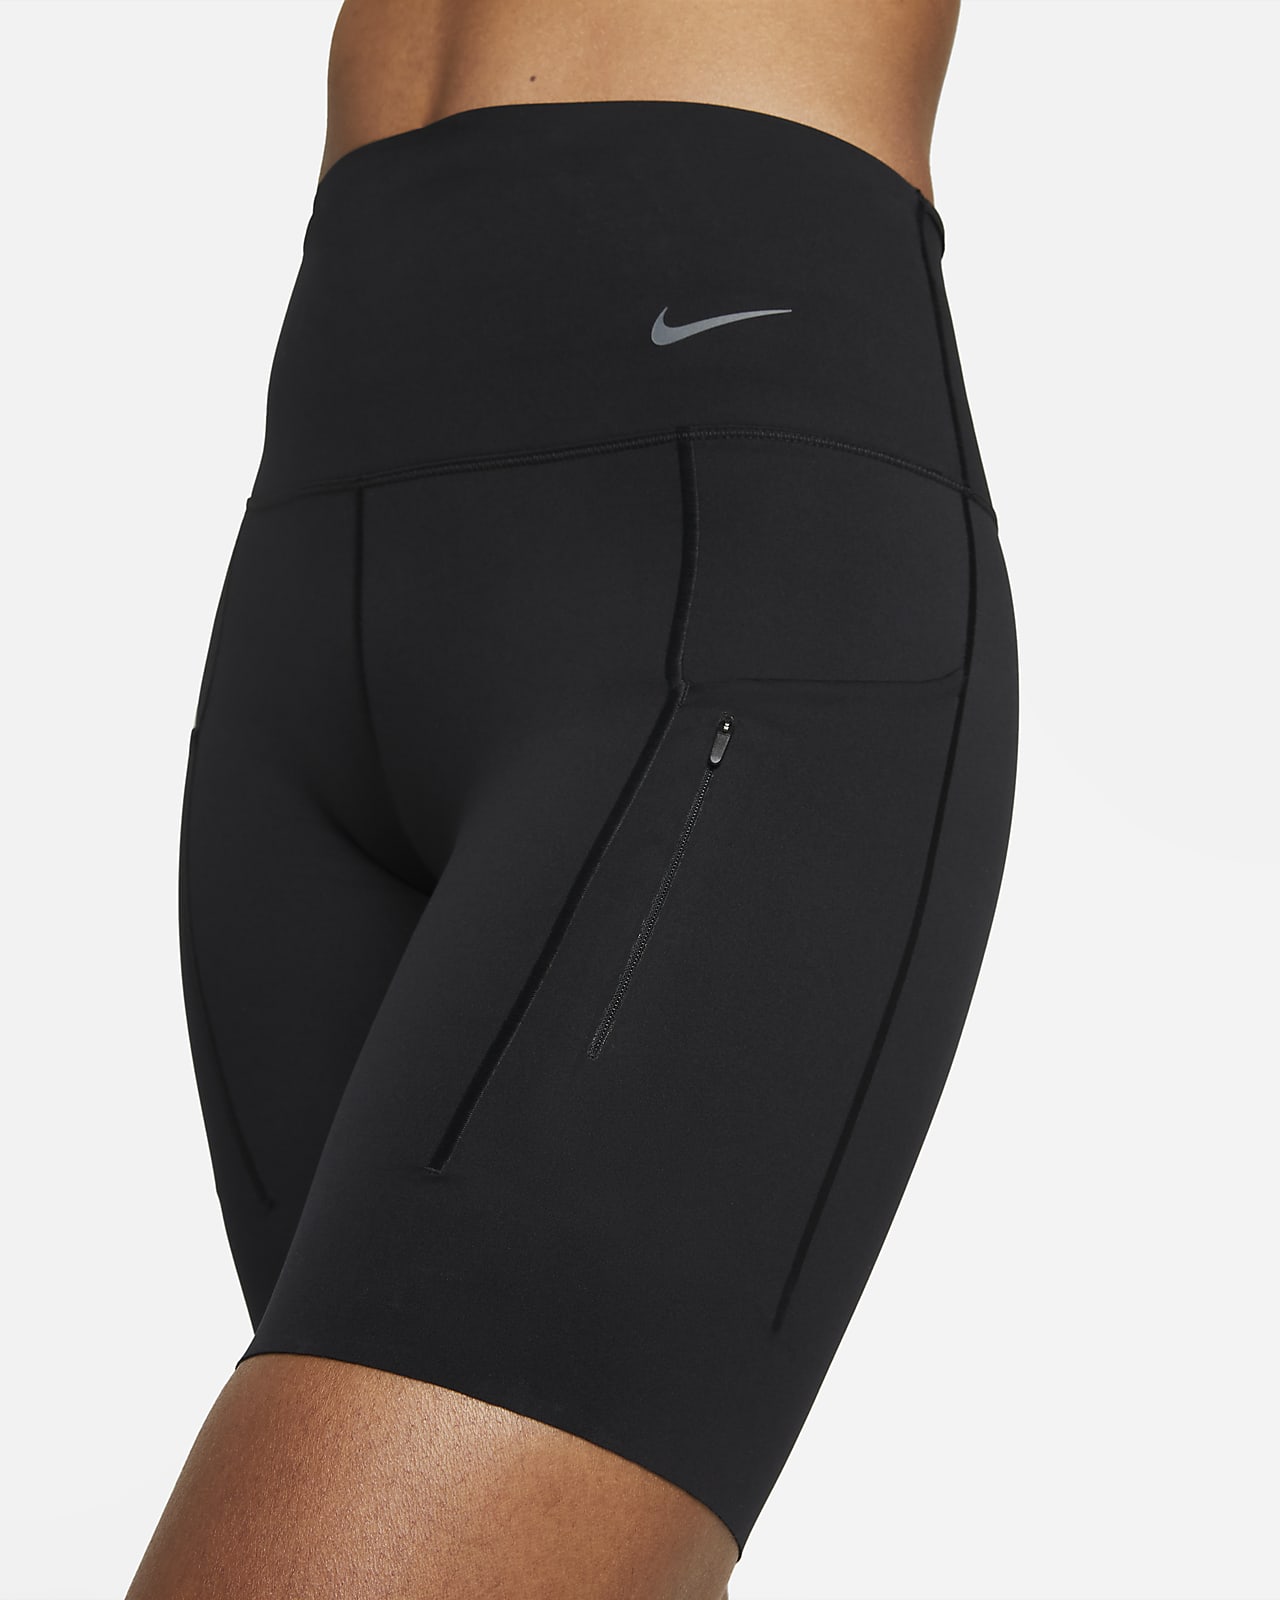 Women's Biker-short Length Tights & Leggings. Nike AU